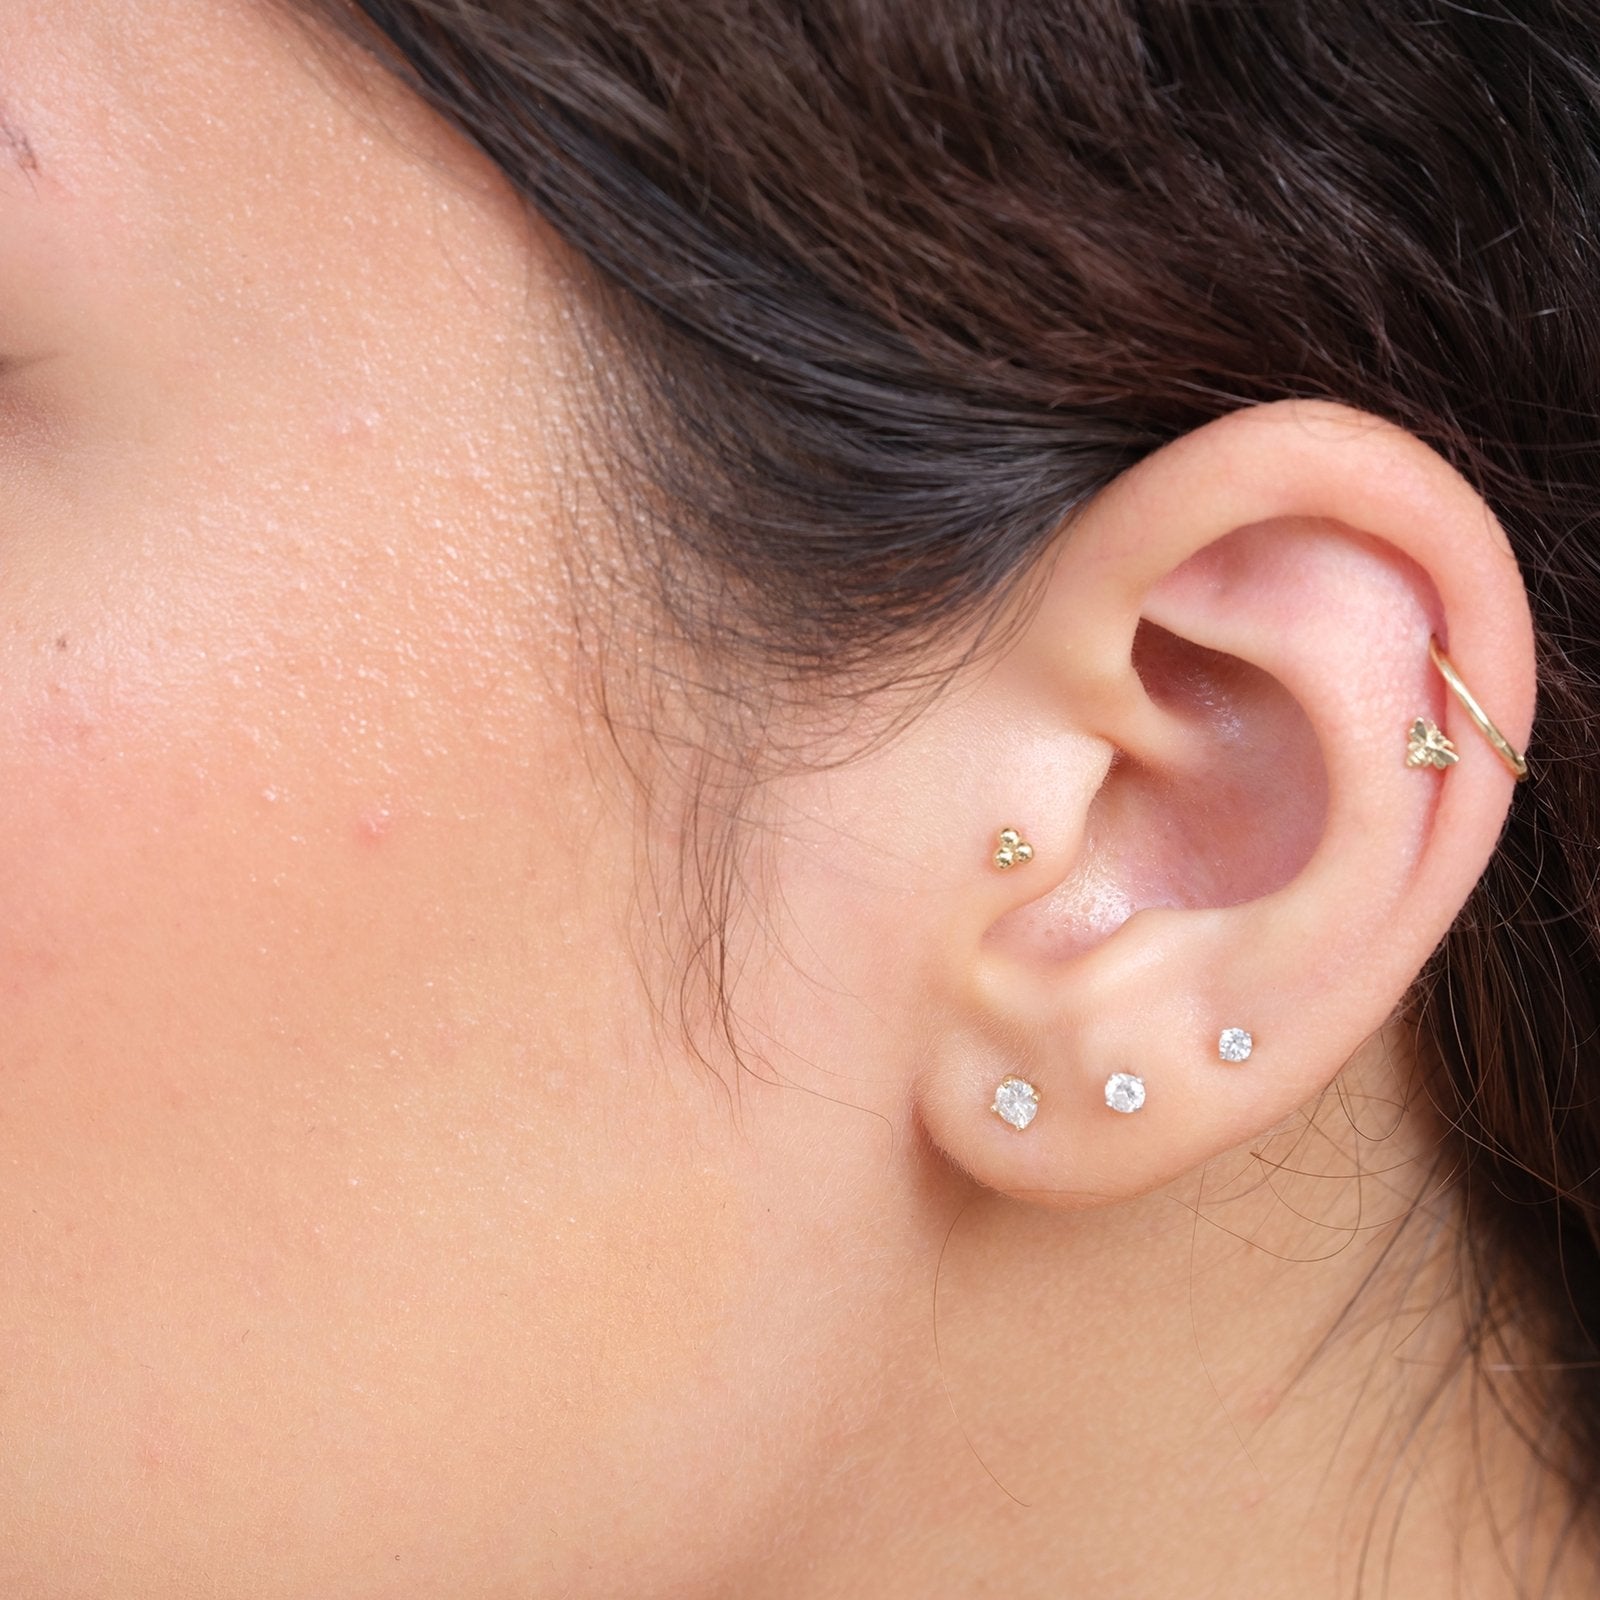 Double Gemstone Flat Back Earrings, Cartilage Earrings, Helix Stud